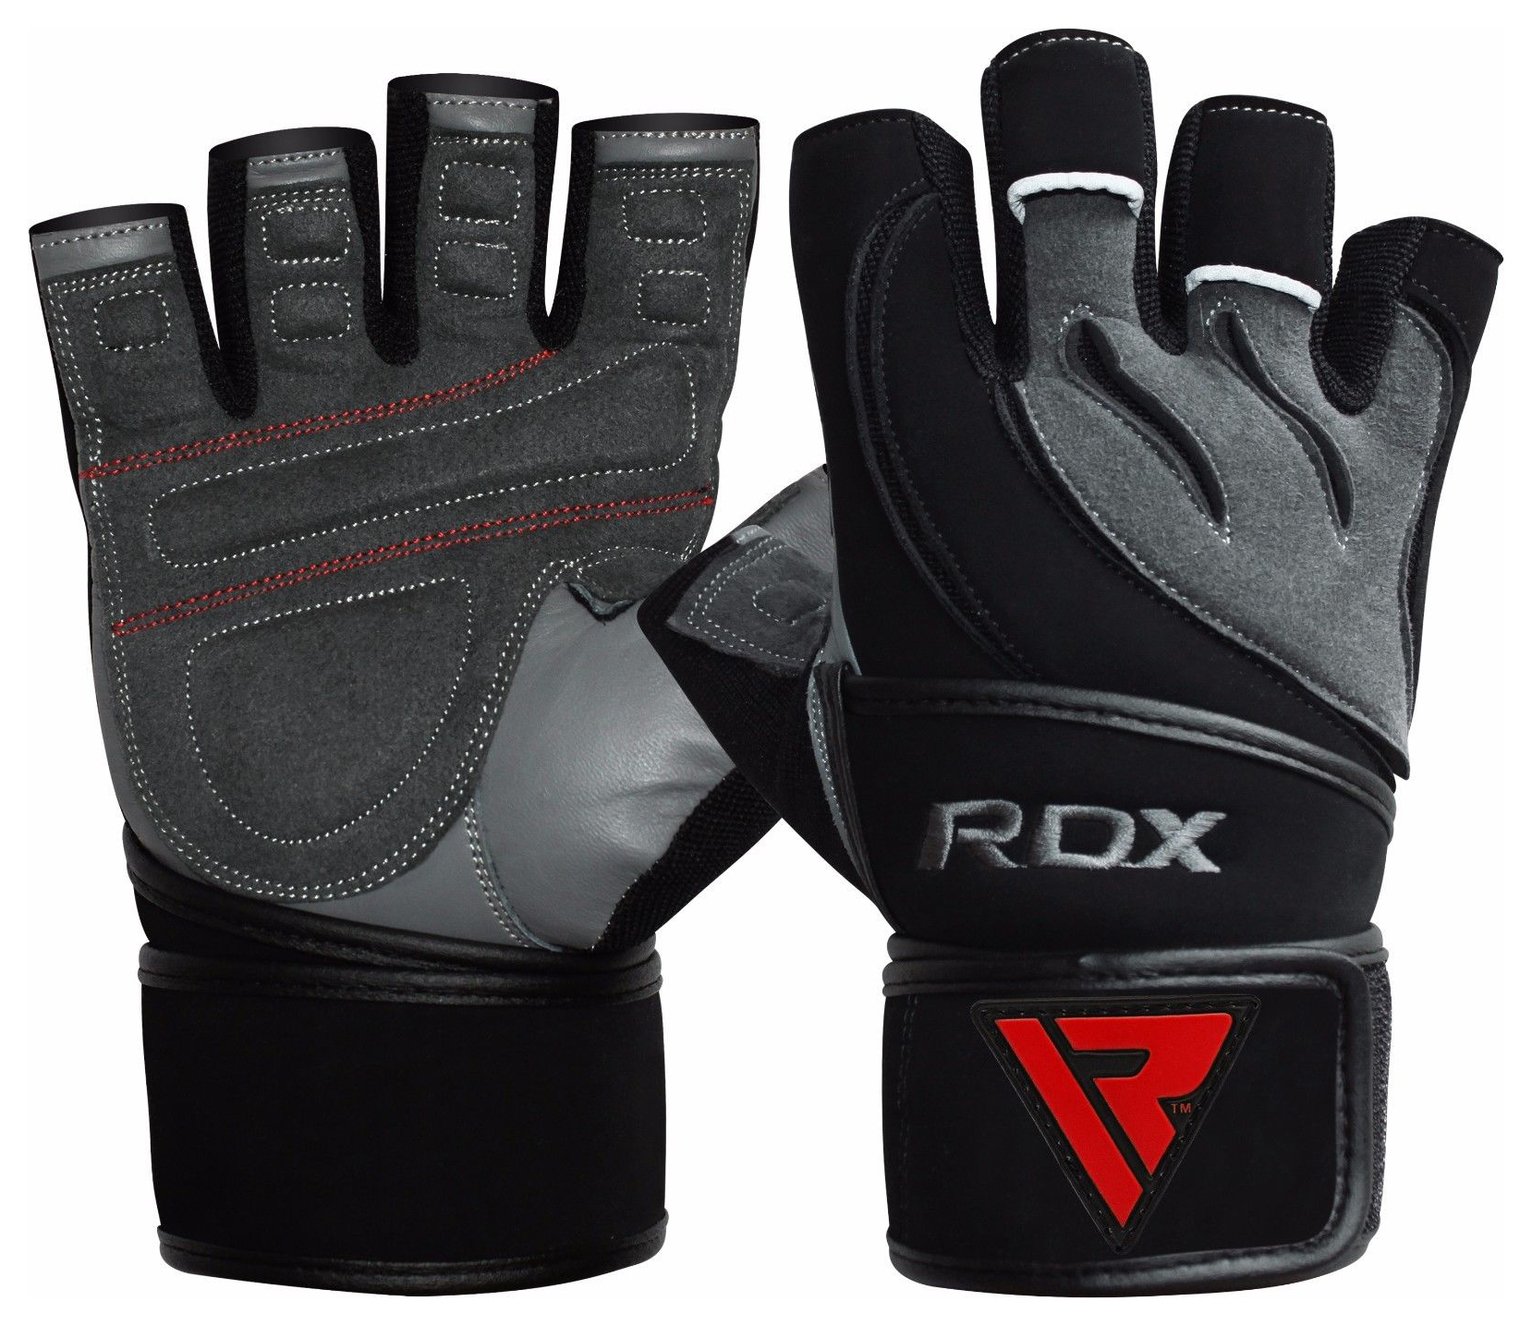 RDX Large/Extra Large Fitness Gloves - Grey